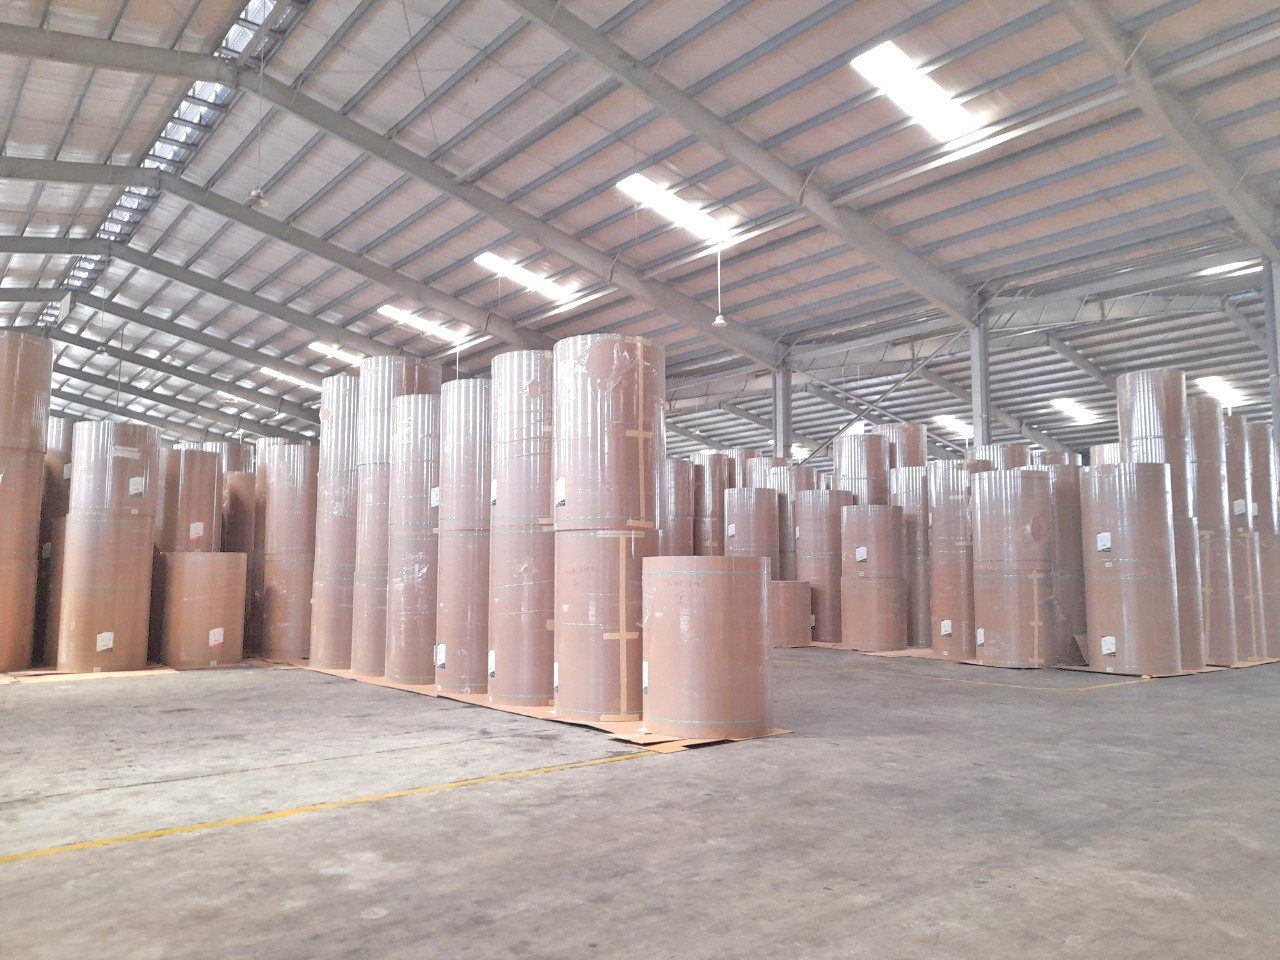 Lưu trữ và xuất khẩu nguyên liệu giấy cho công ty Sun Paper Savannakhet (Lào) qua cảng Chu Lai.